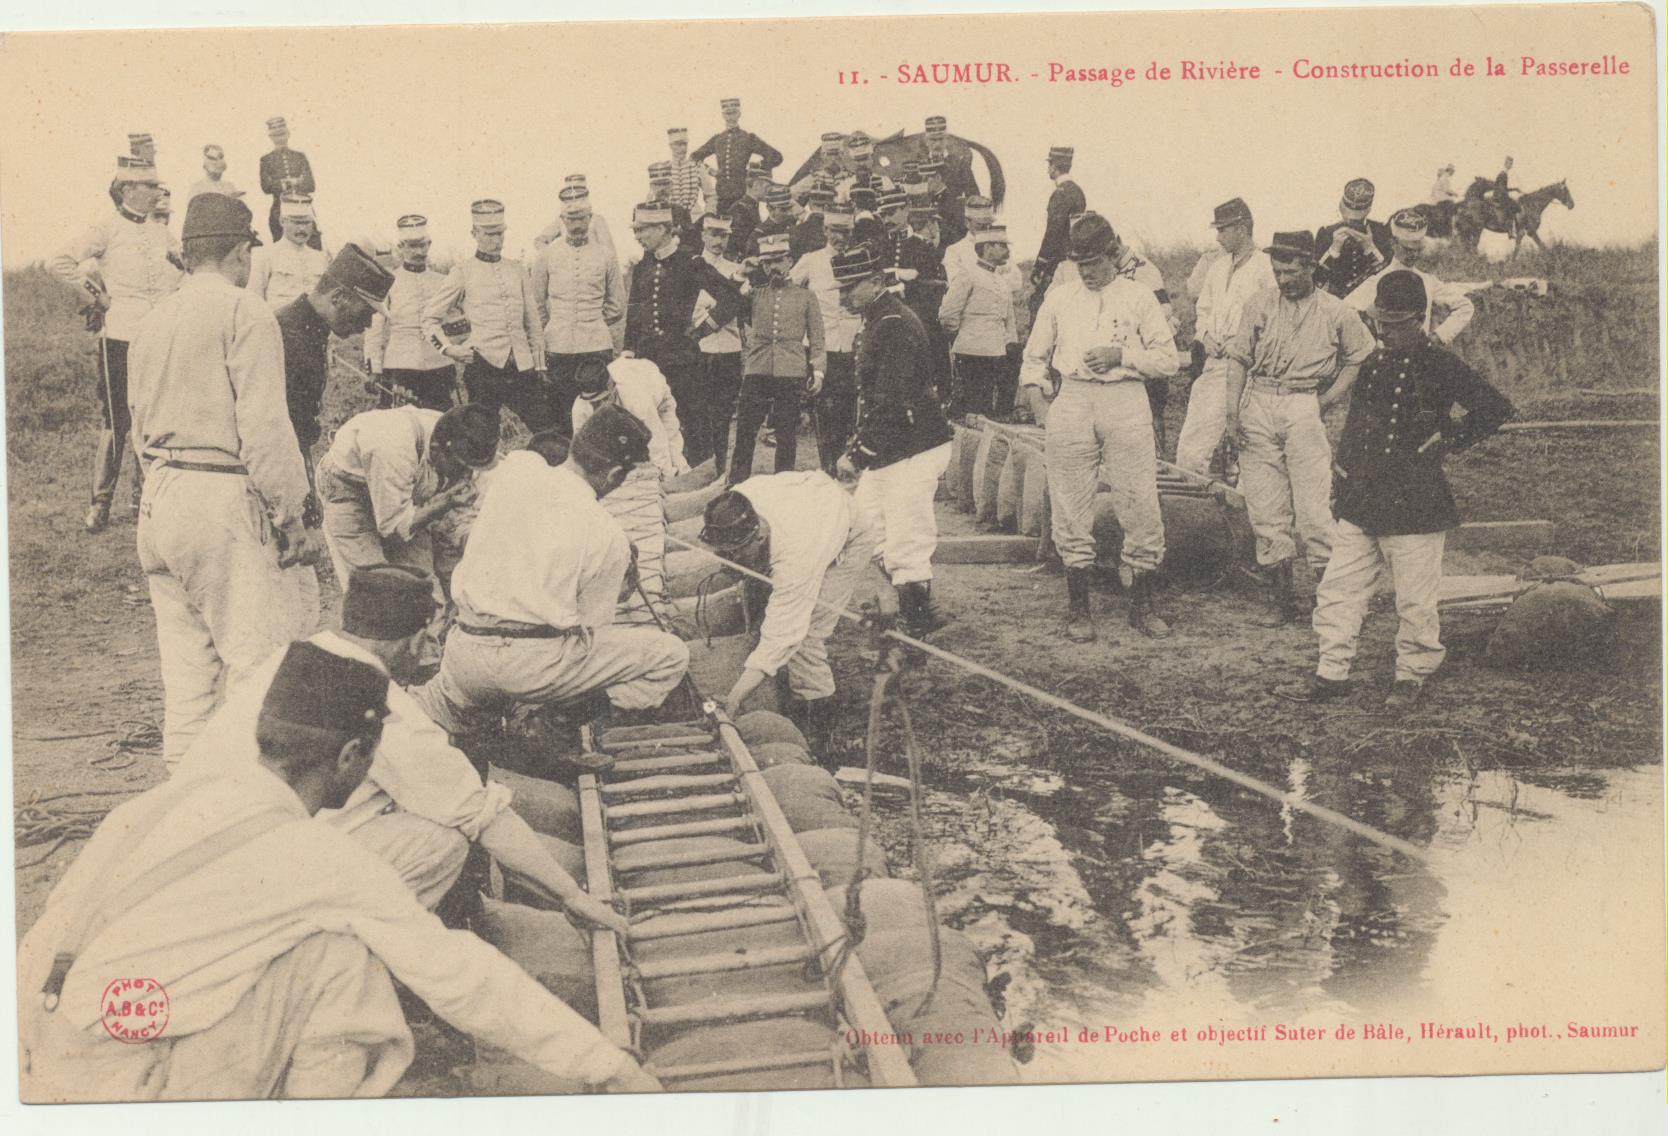 Saumur. Passage de Riviere. Construction de la Passerelle. Anterior a 1905